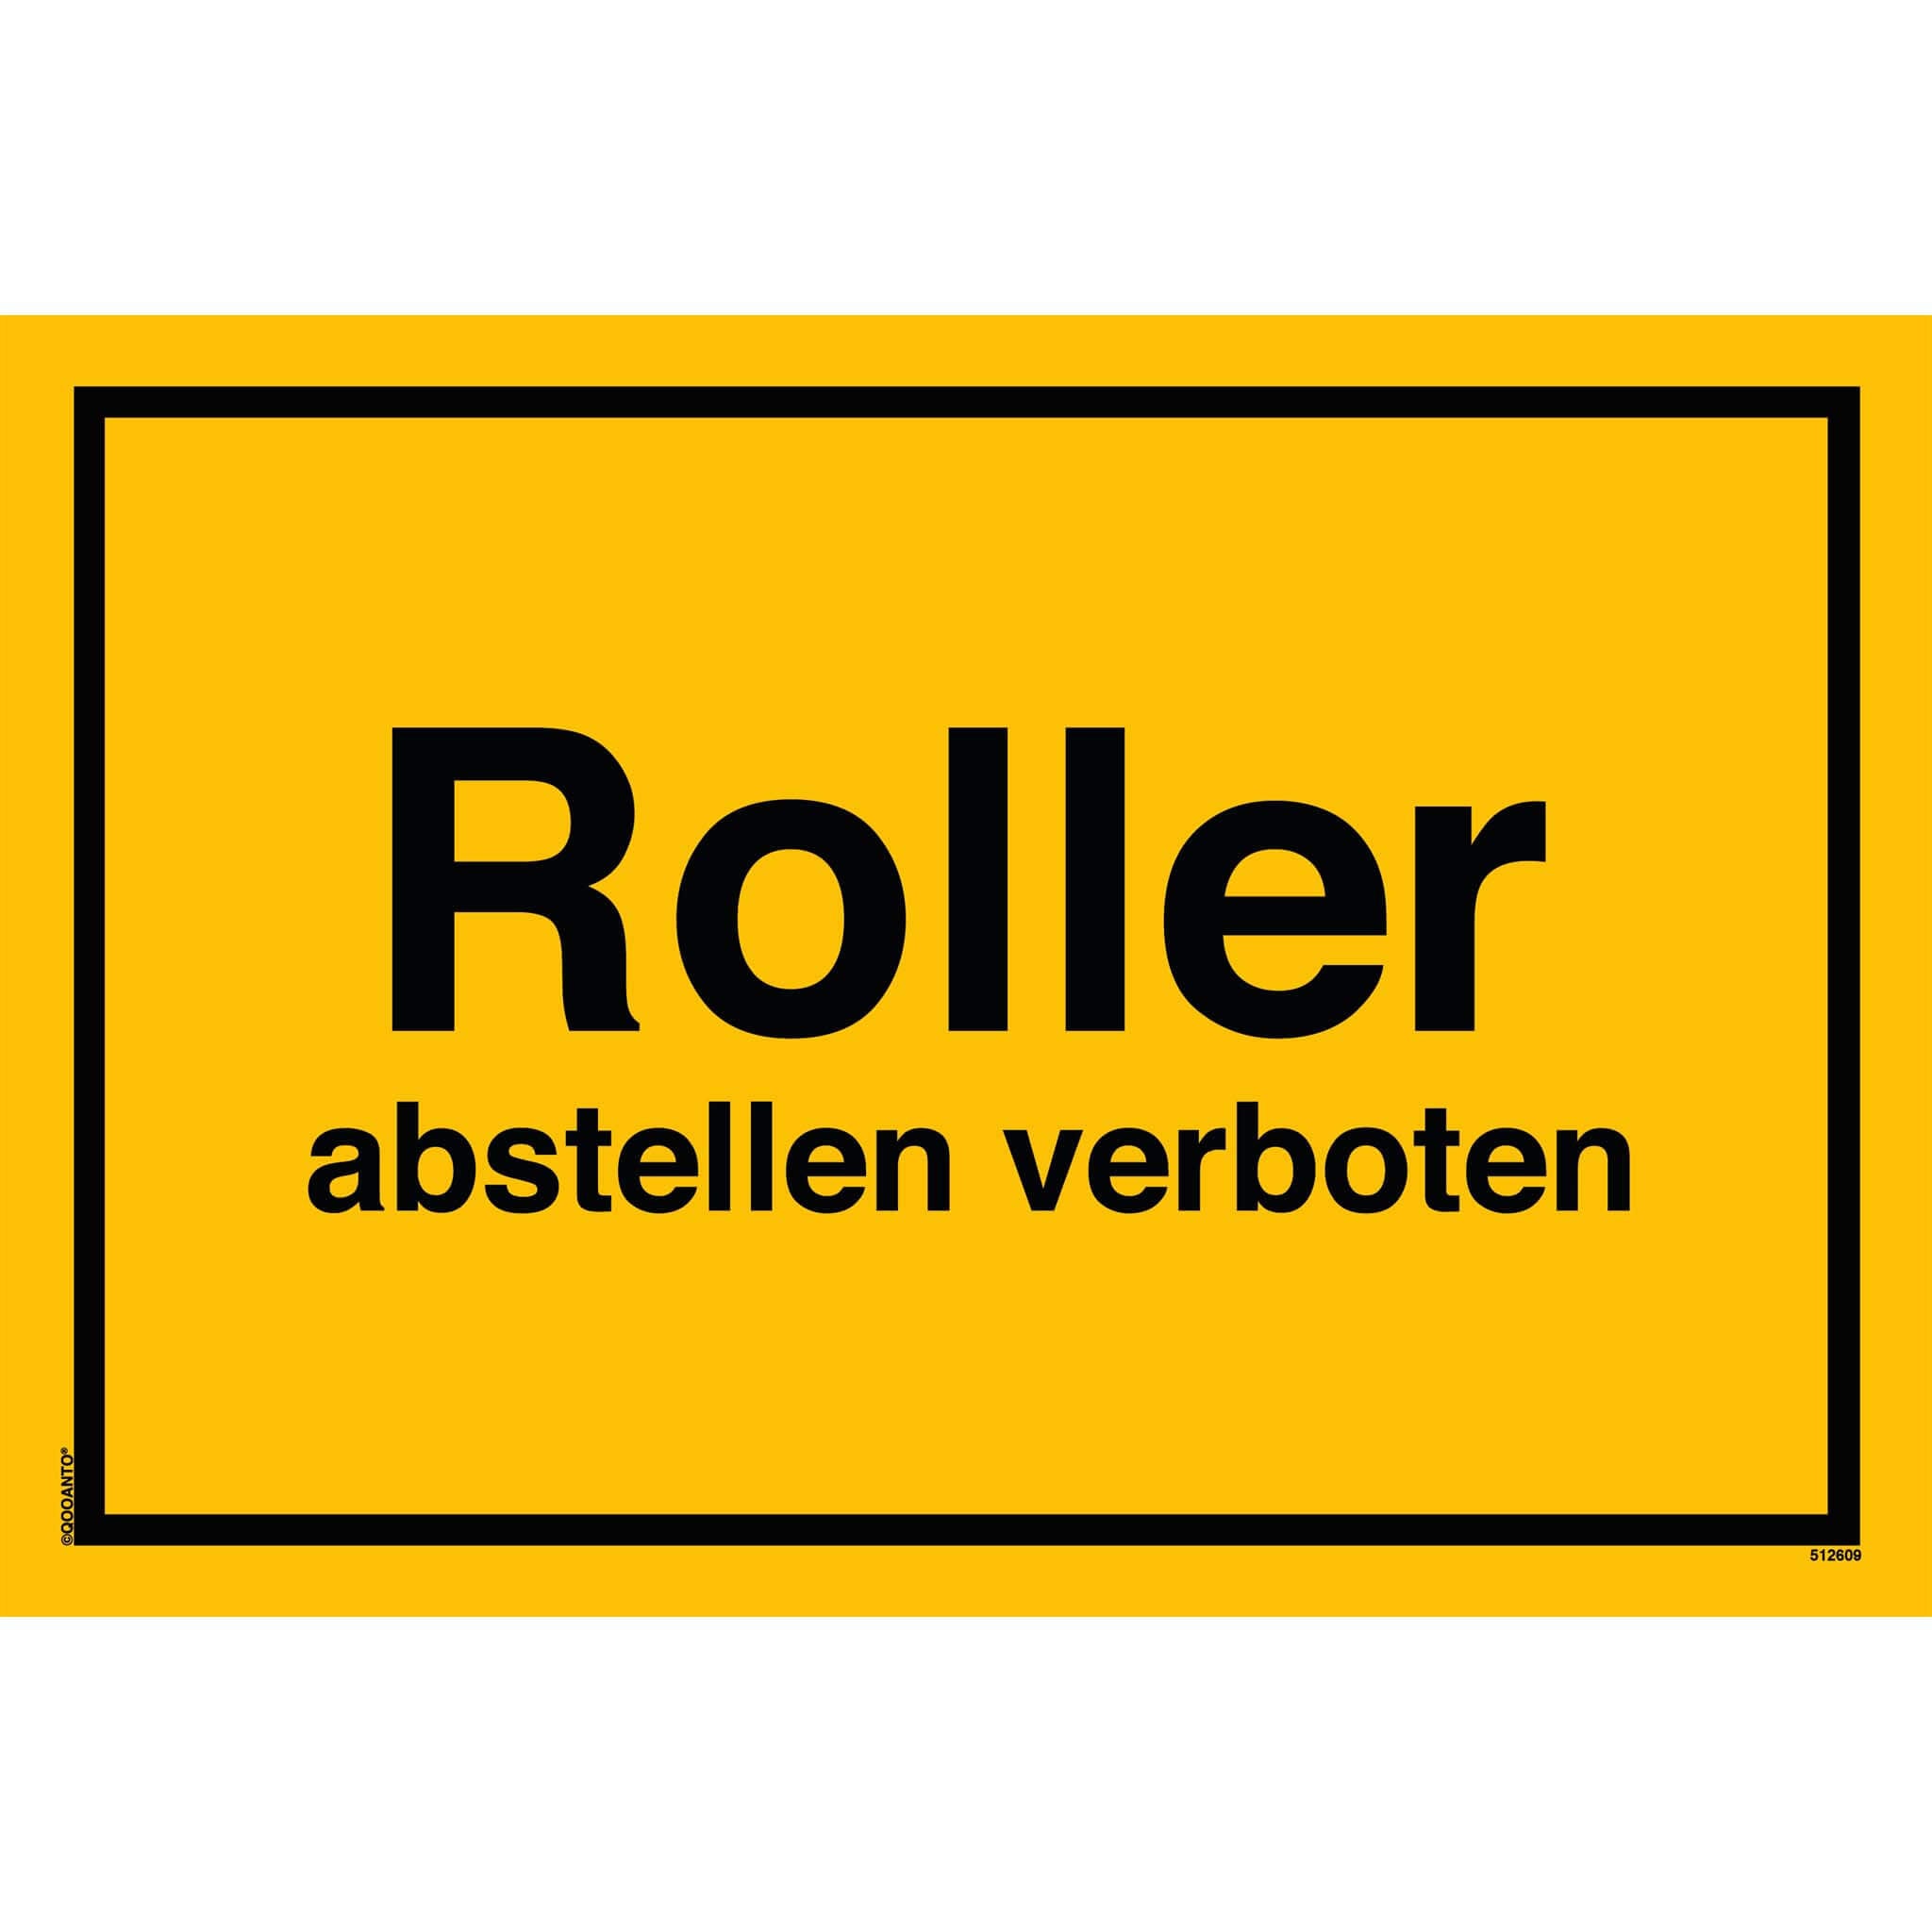 Roller abstellen verboten, gelb, Schild